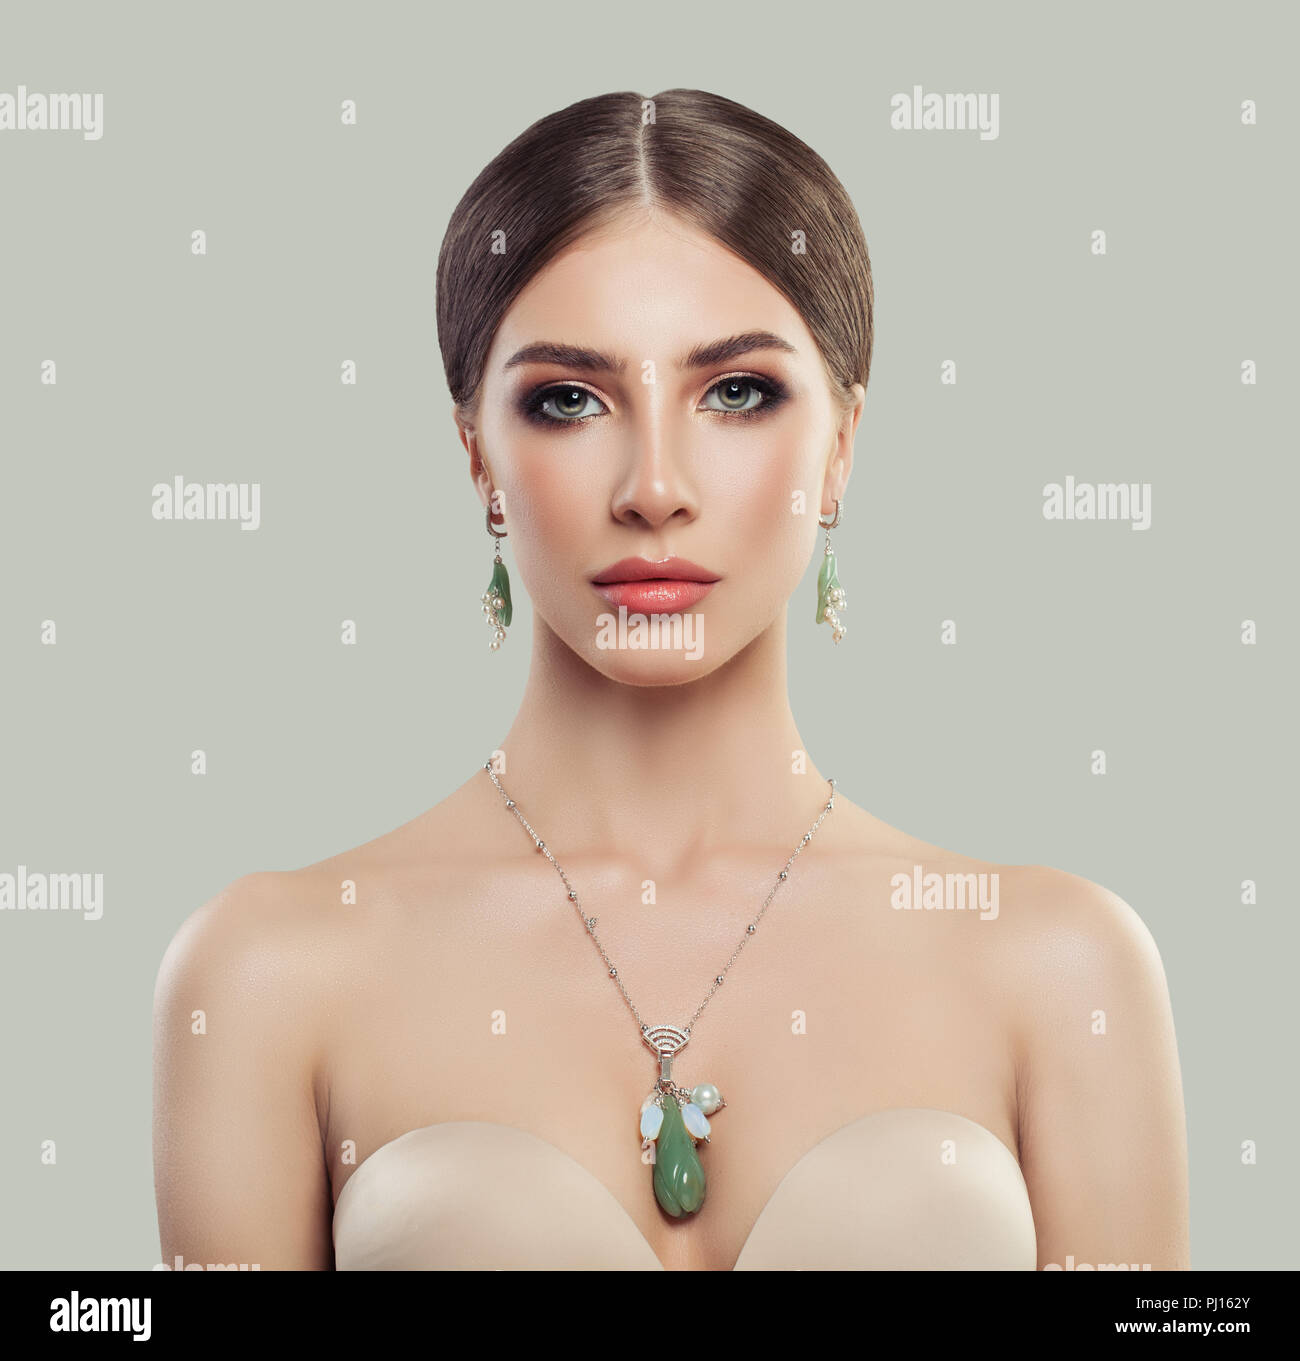 Perfekte Frau mit Modeschmuck portrait. Schmuck für die Frau, die Halskette  und Ohrringe mit Perlen und grüne Steine Stockfotografie - Alamy